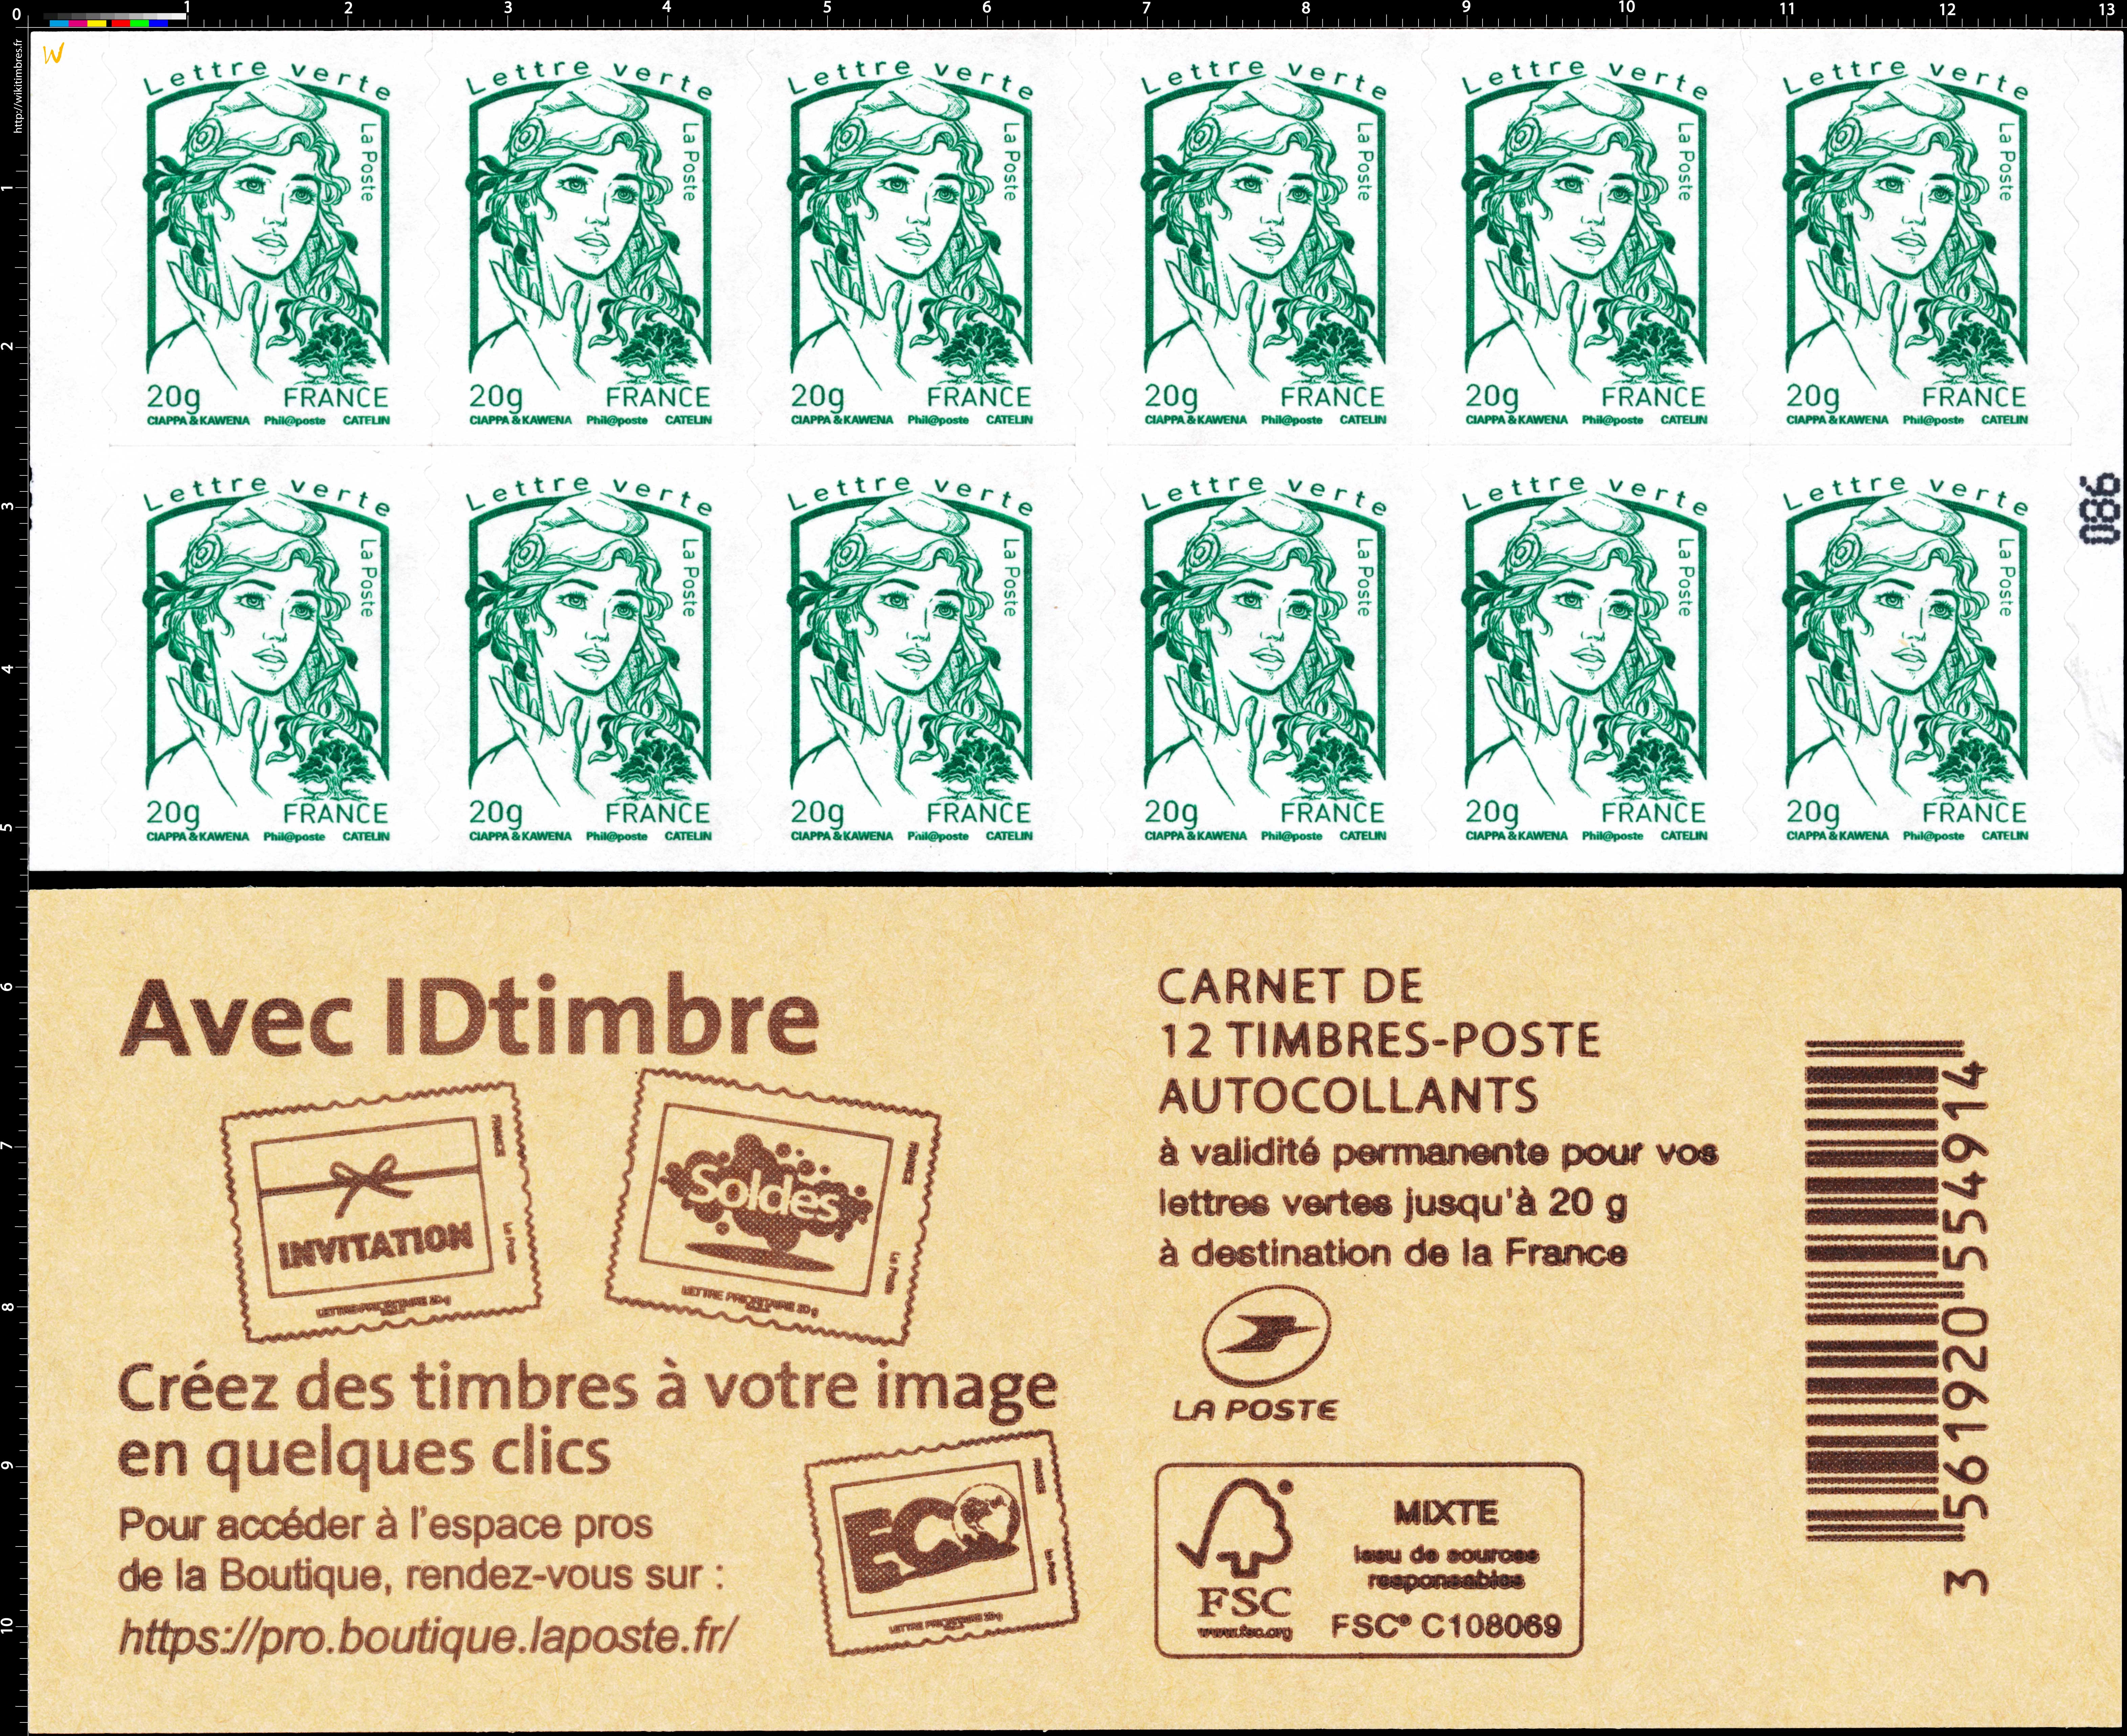 2015 Avec IDtimbre Créez des timbres à votre image en quelques clics